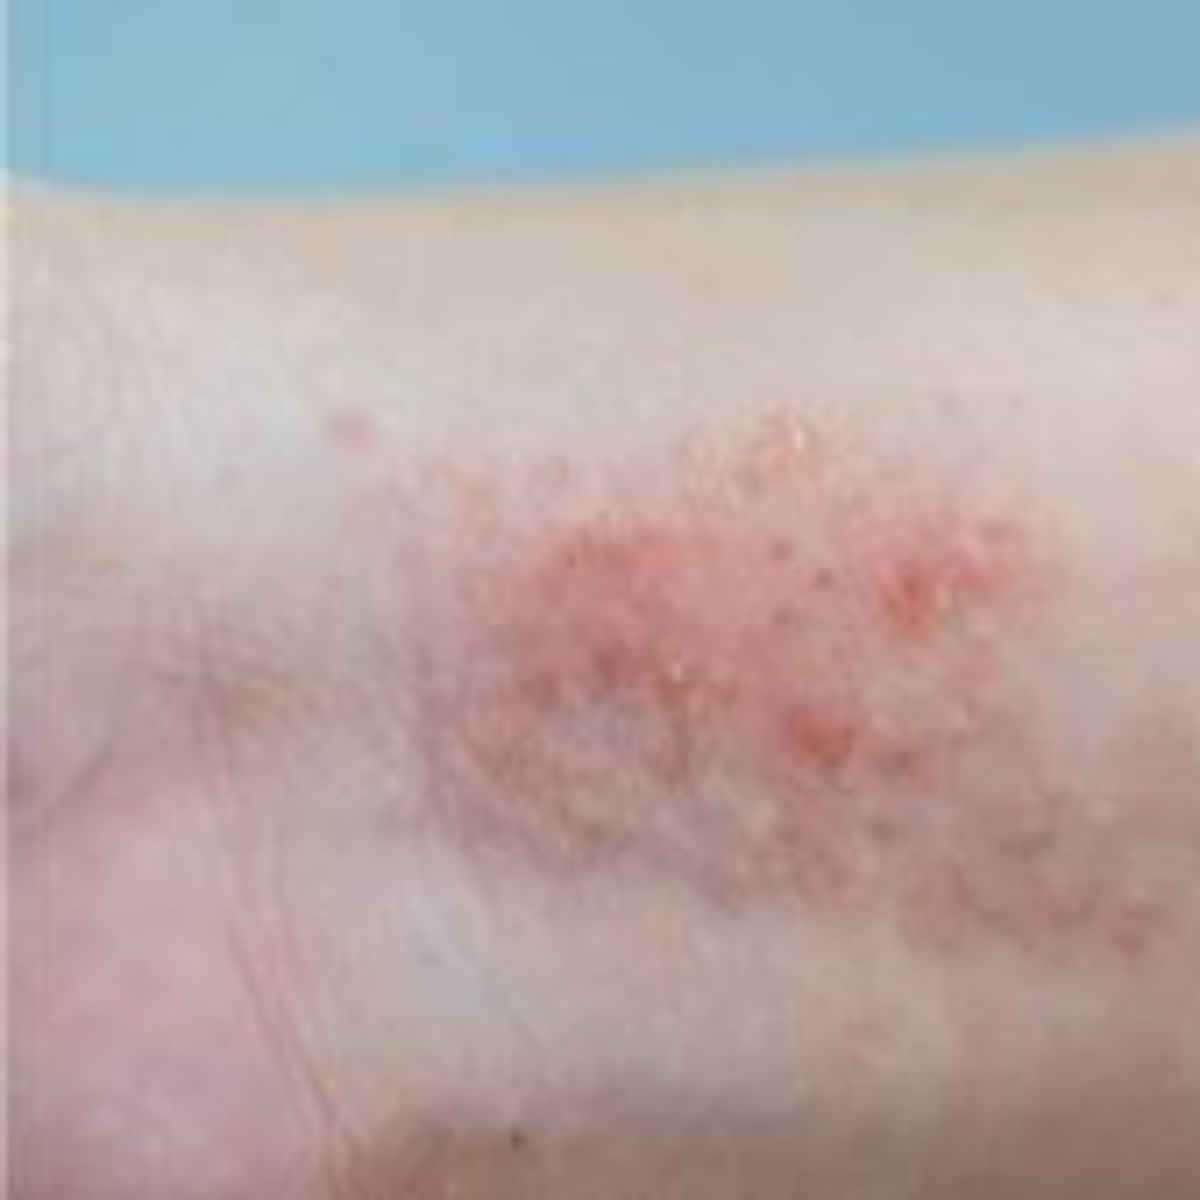  Dermatite pode causar vermelhidão, coceira e feridas na pele. 